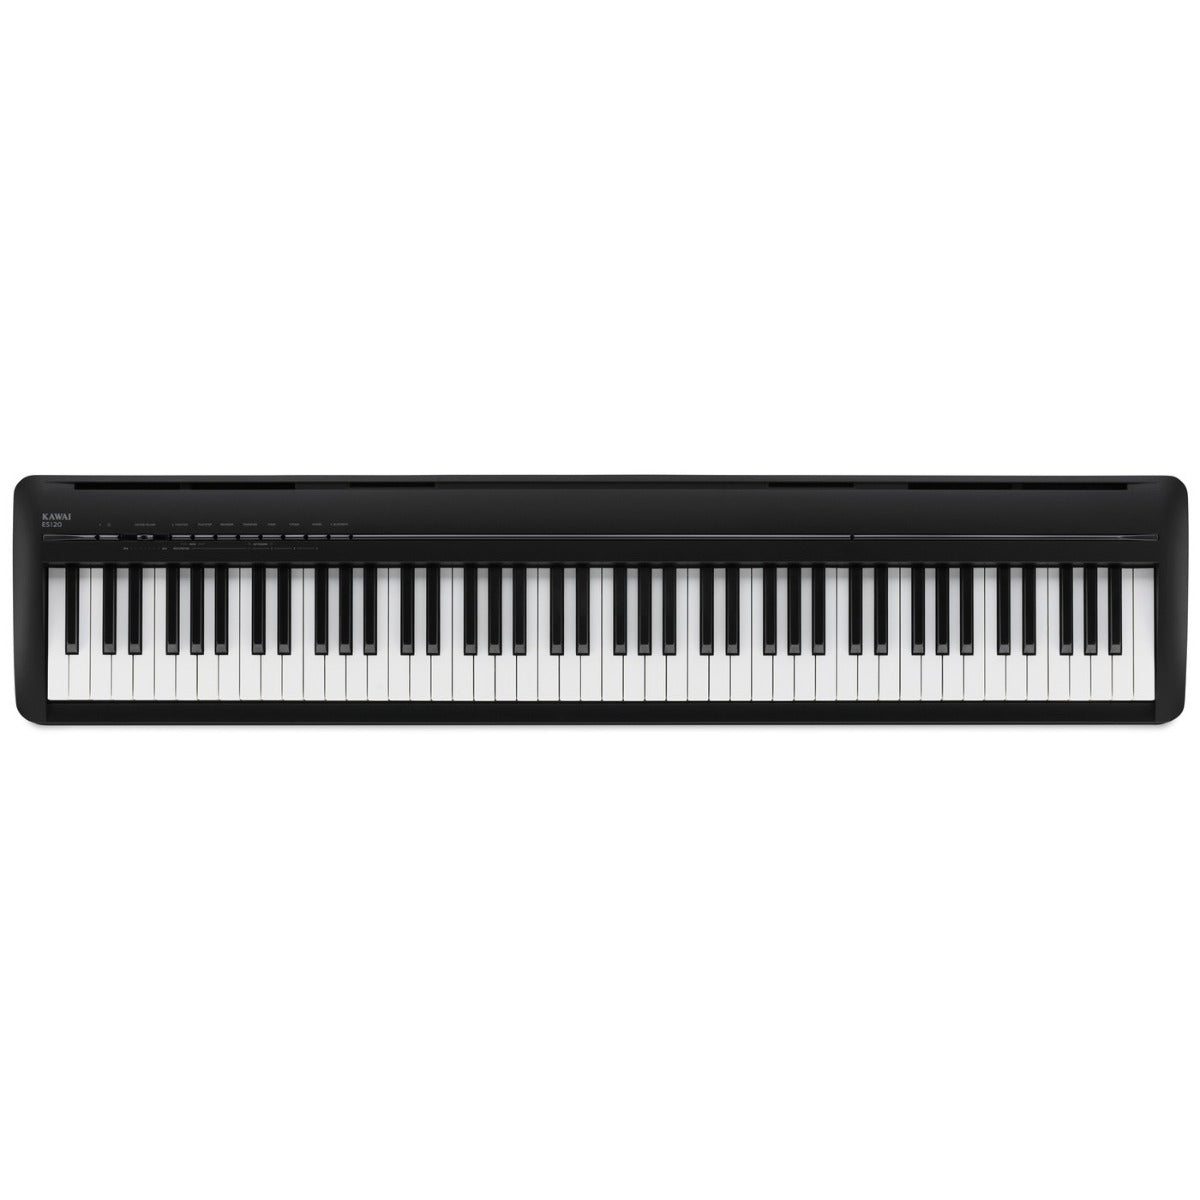 Kawai ES120 Portable Digital Piano - Black STAGE ESSENTIALS BUNDLE